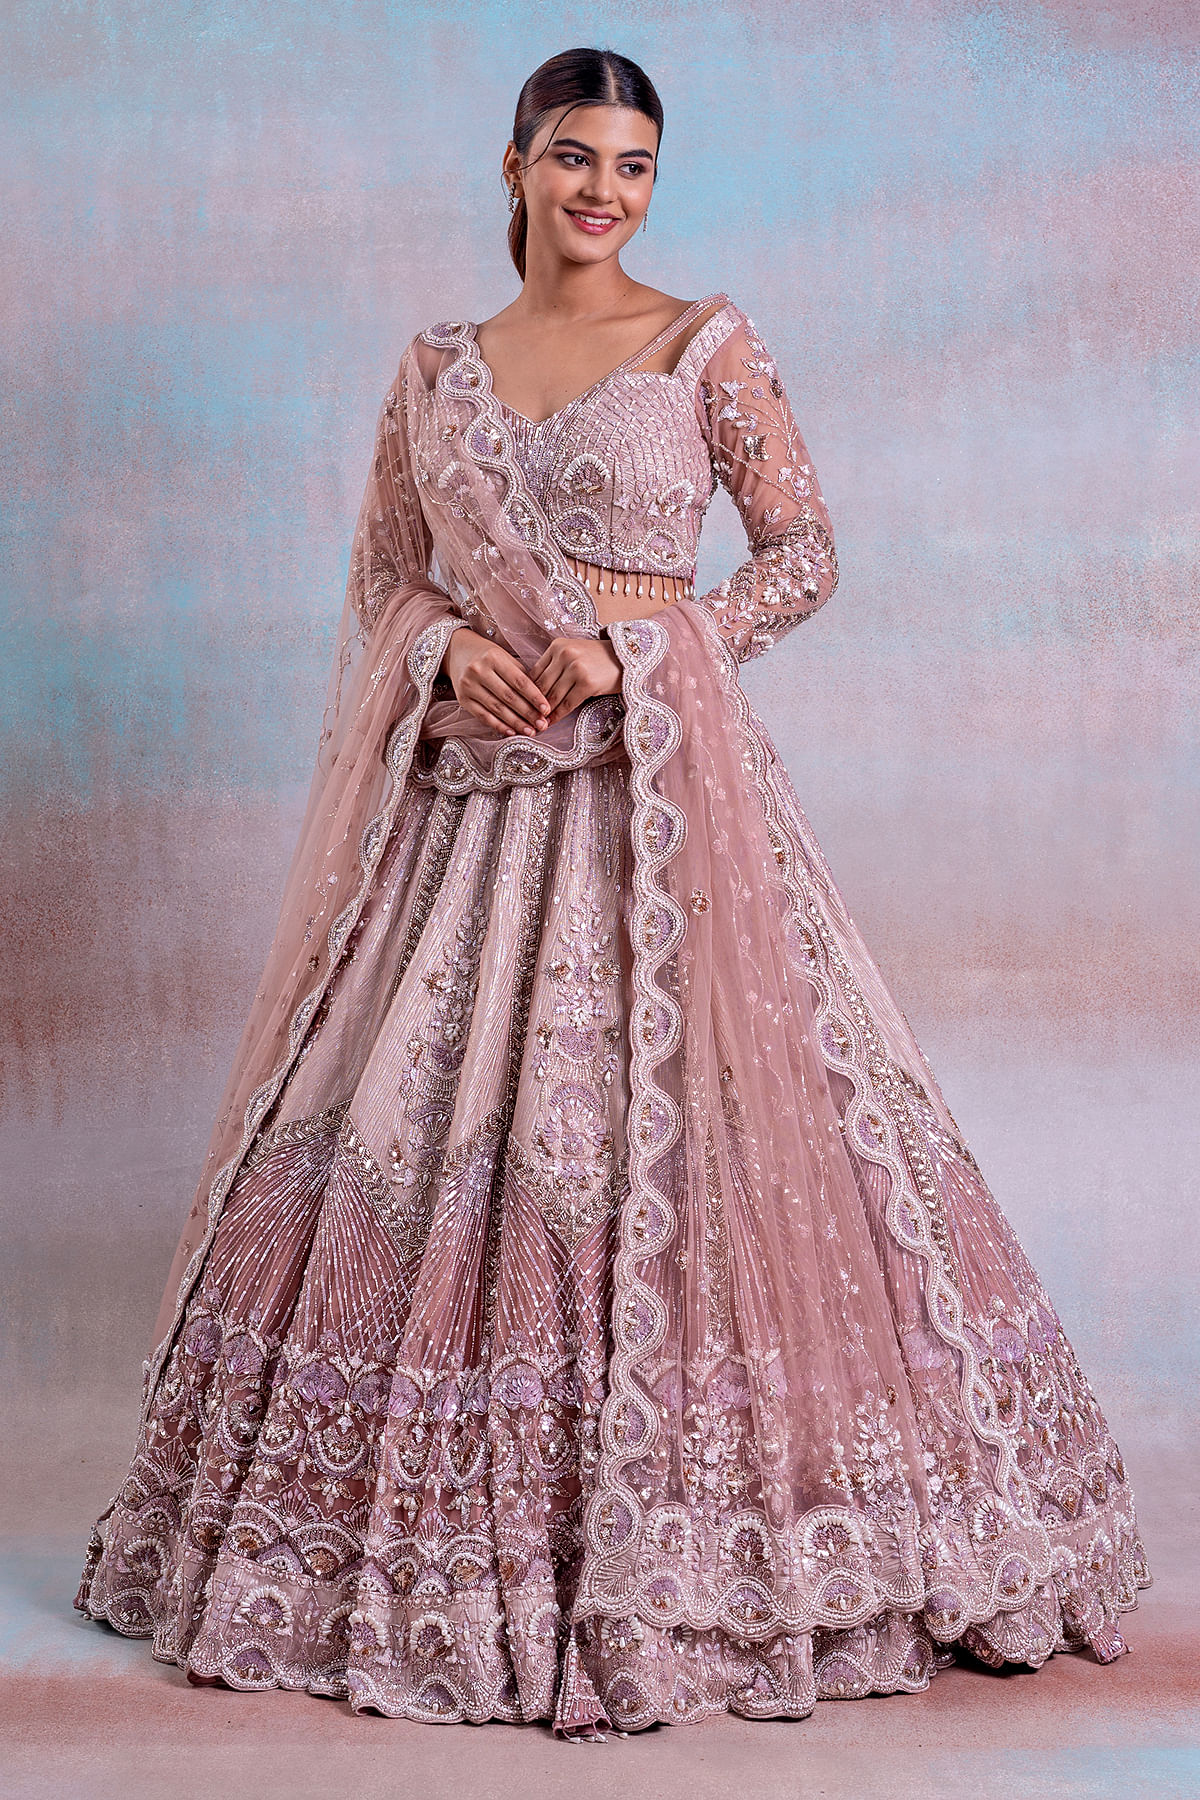 Bridal Wedding Lehenga Online - Buy Indian Bridal Lehenga Choli – Page 4 –  Suvidha Fashion